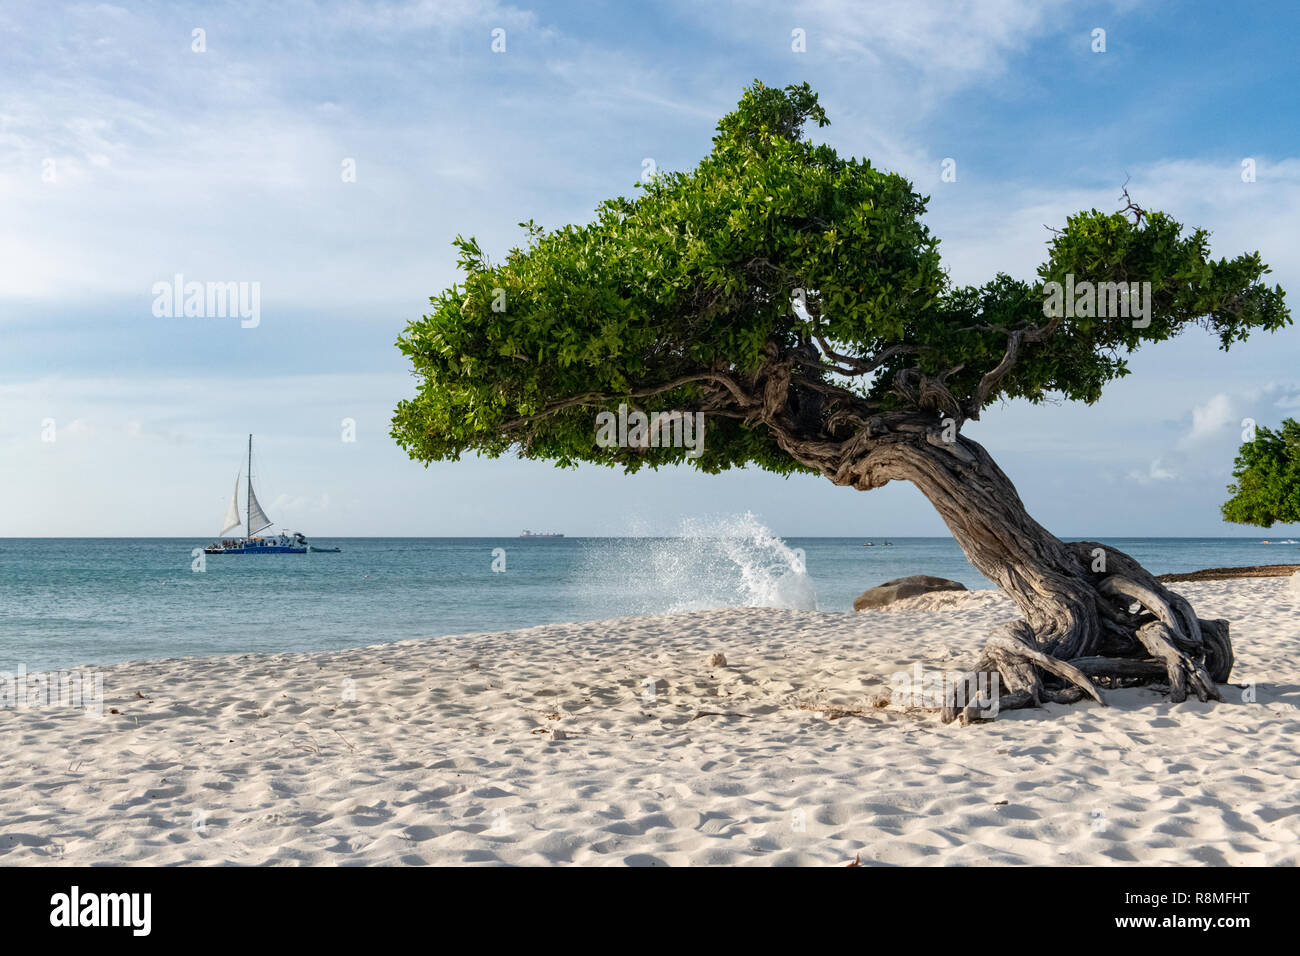 Aruba Beach - albero Divi-Divi Eagle Beach Aruba - famosa in tutto il mondo Divi Divi alberi aka. Libidibia coriaria - Un nativo di leguminose tree - Caraibi Foto Stock